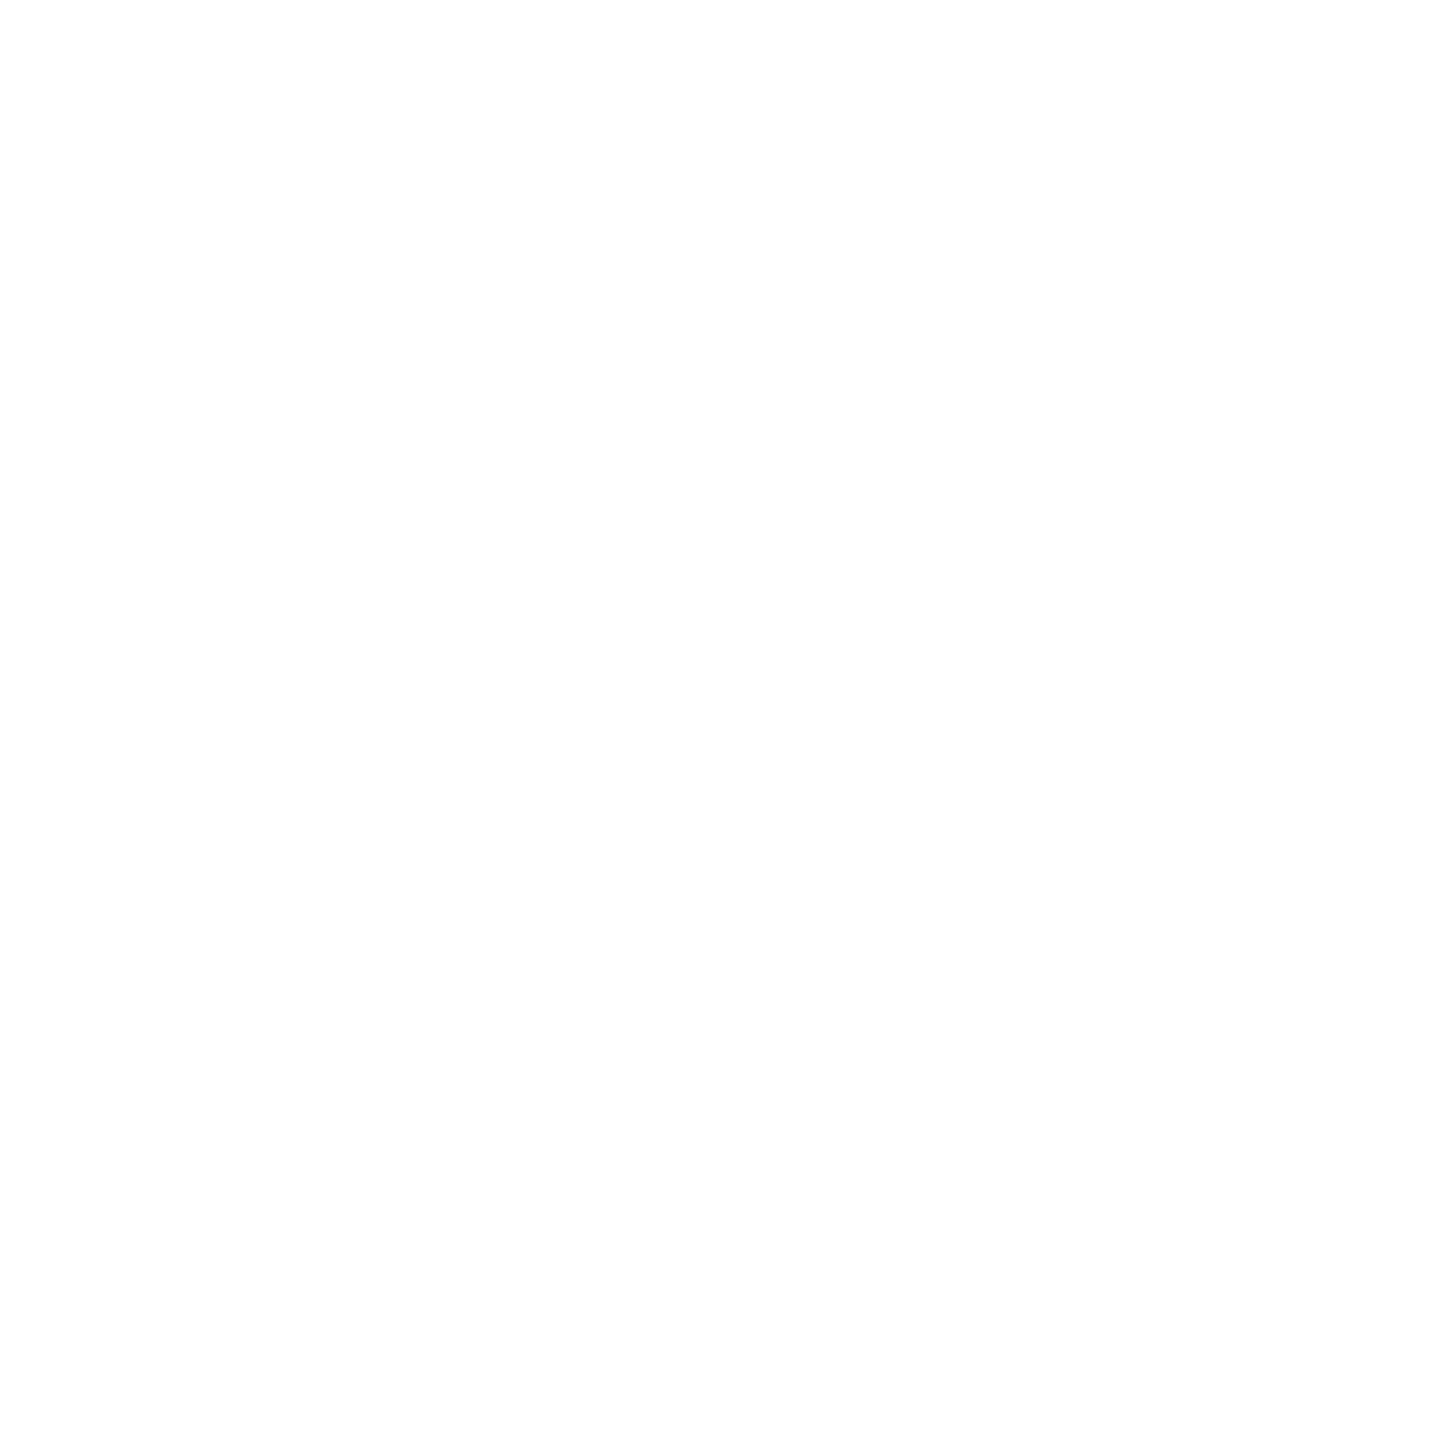 HubBurger.com